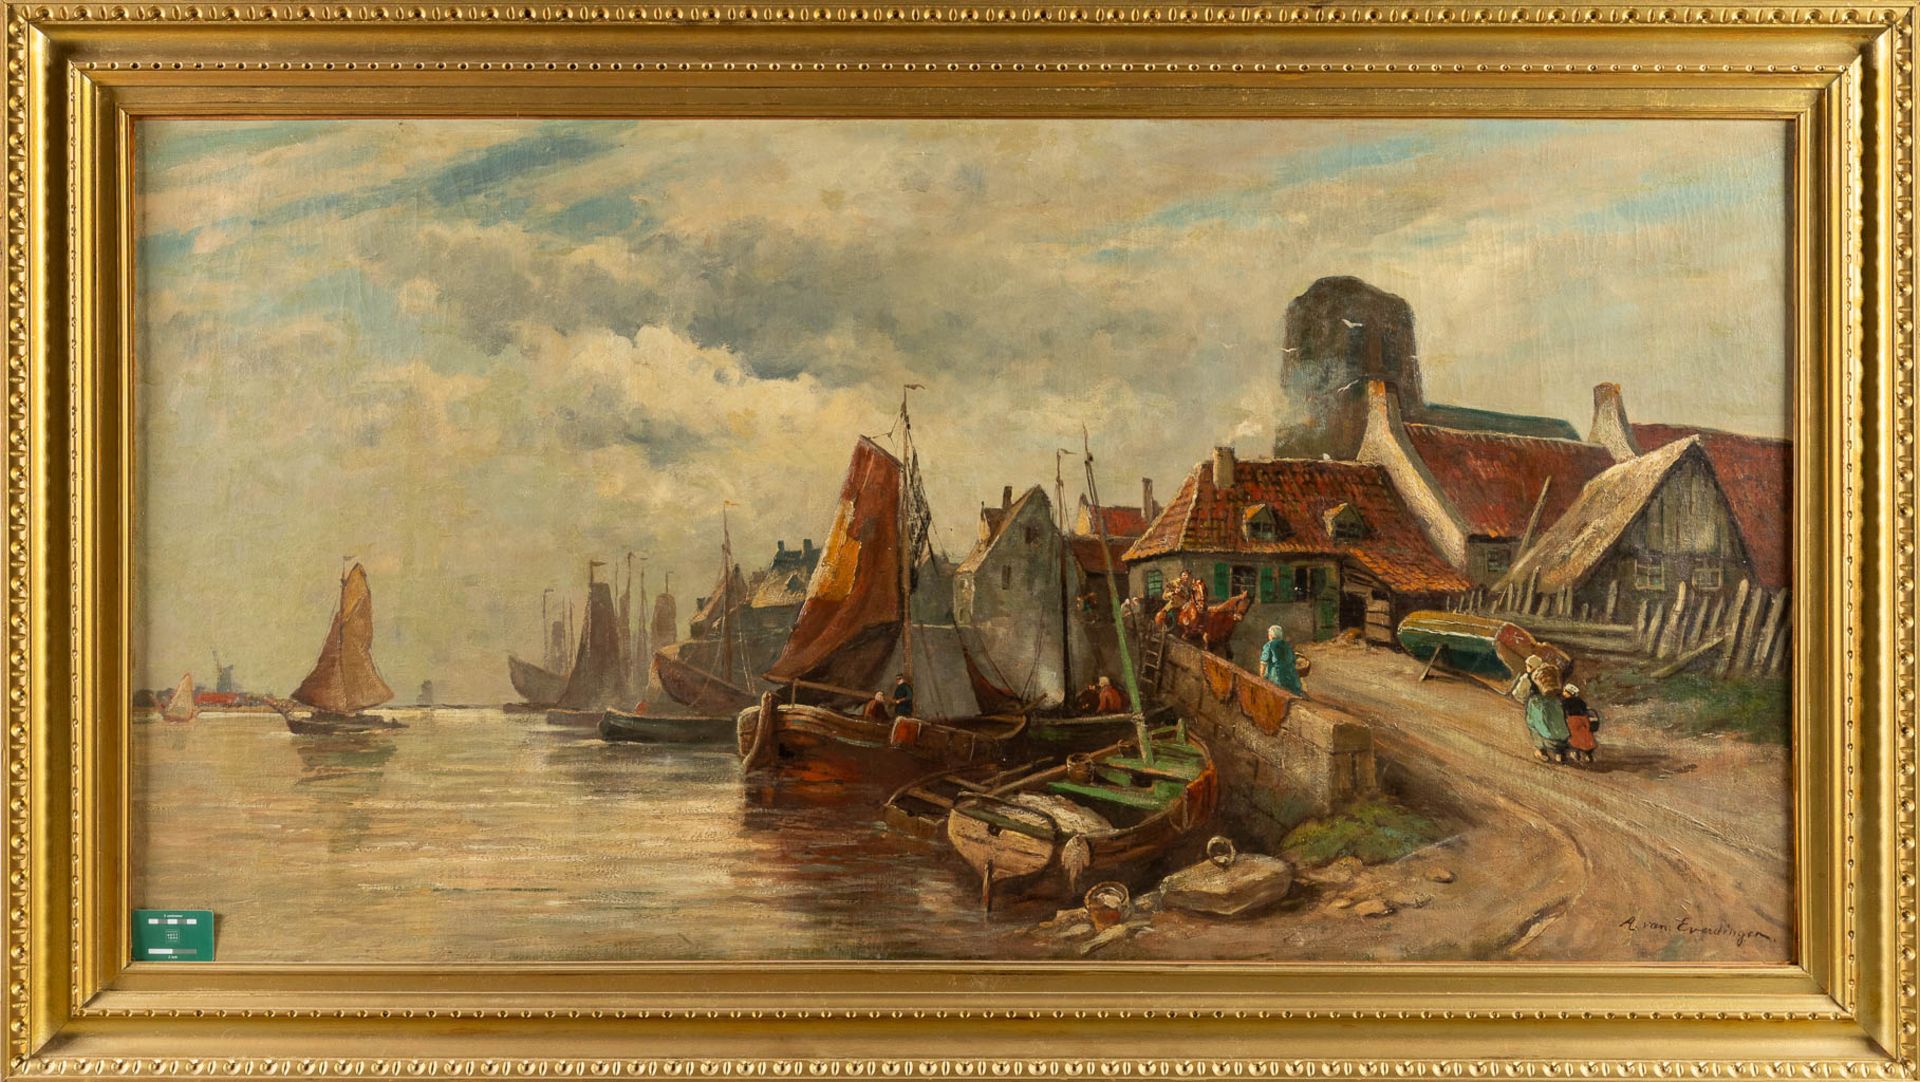 Adriaen VAN EVERDINGEN (1832-1912) 'Village near the river' oil on canvas. (W:171 x H:90 cm) - Bild 2 aus 8